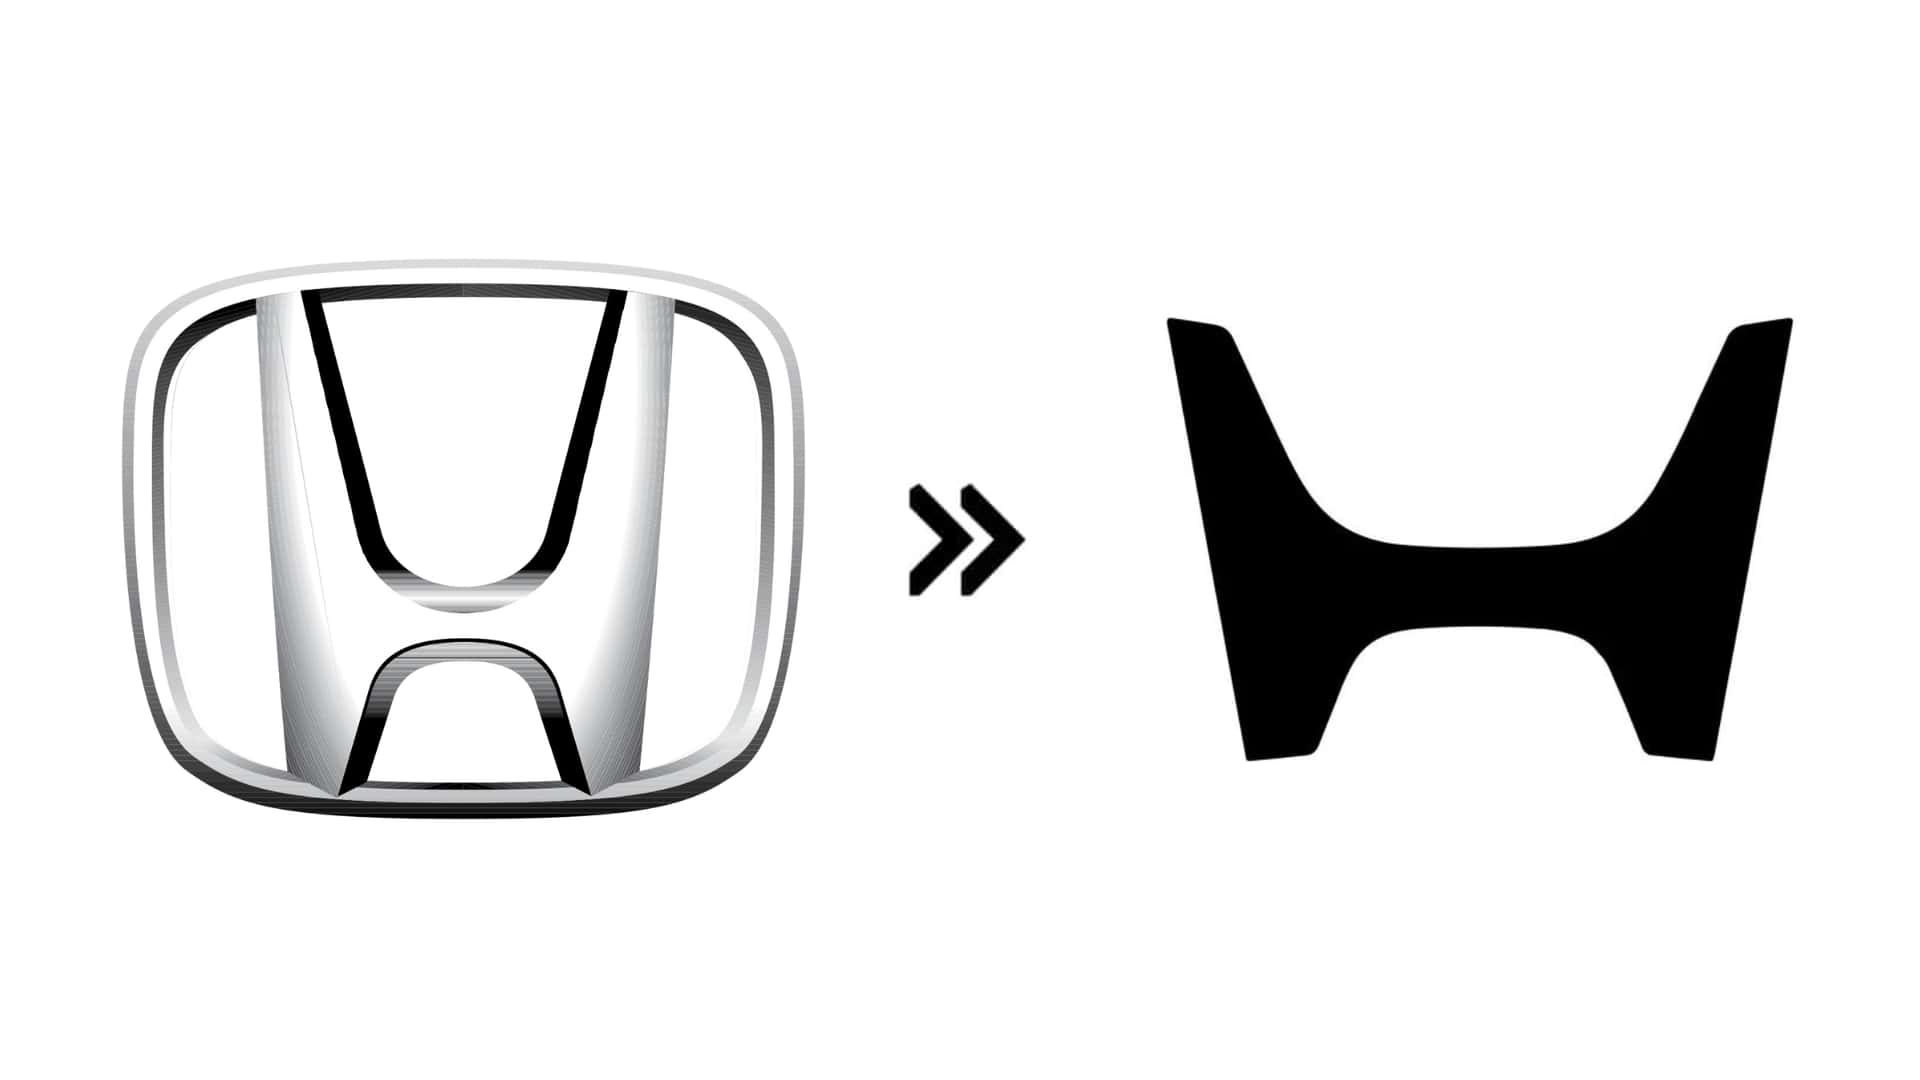 Cập nhật lại những hãng xe đã đổi logo trong thời gian qua: Số lượng tăng mạnh, phong cách y nhau - Ảnh 13.